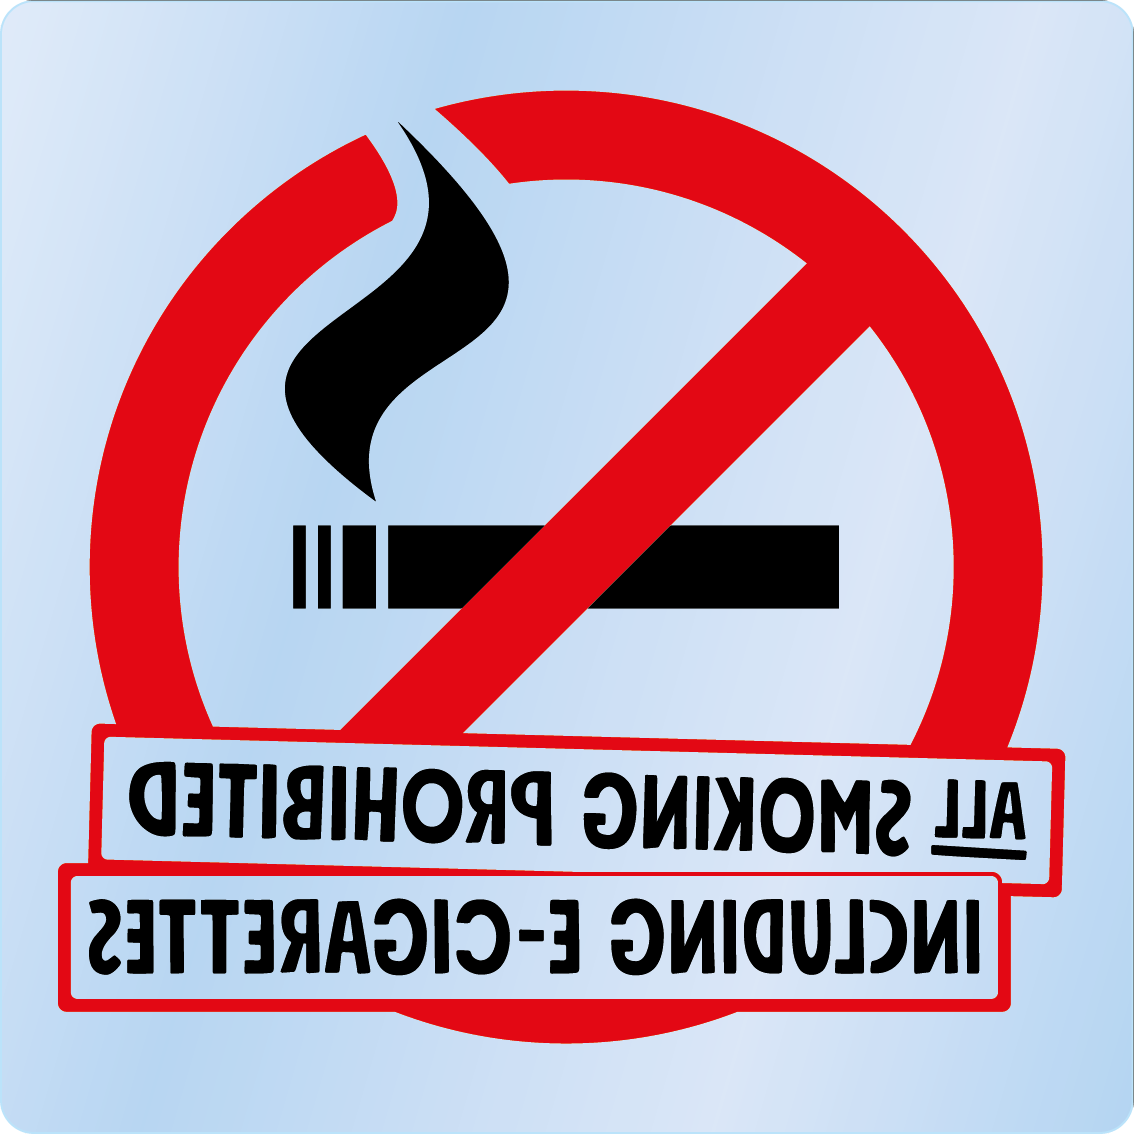 Bild rökförbudsskylt 02A12 ENG: Röd+Svart / Transparent